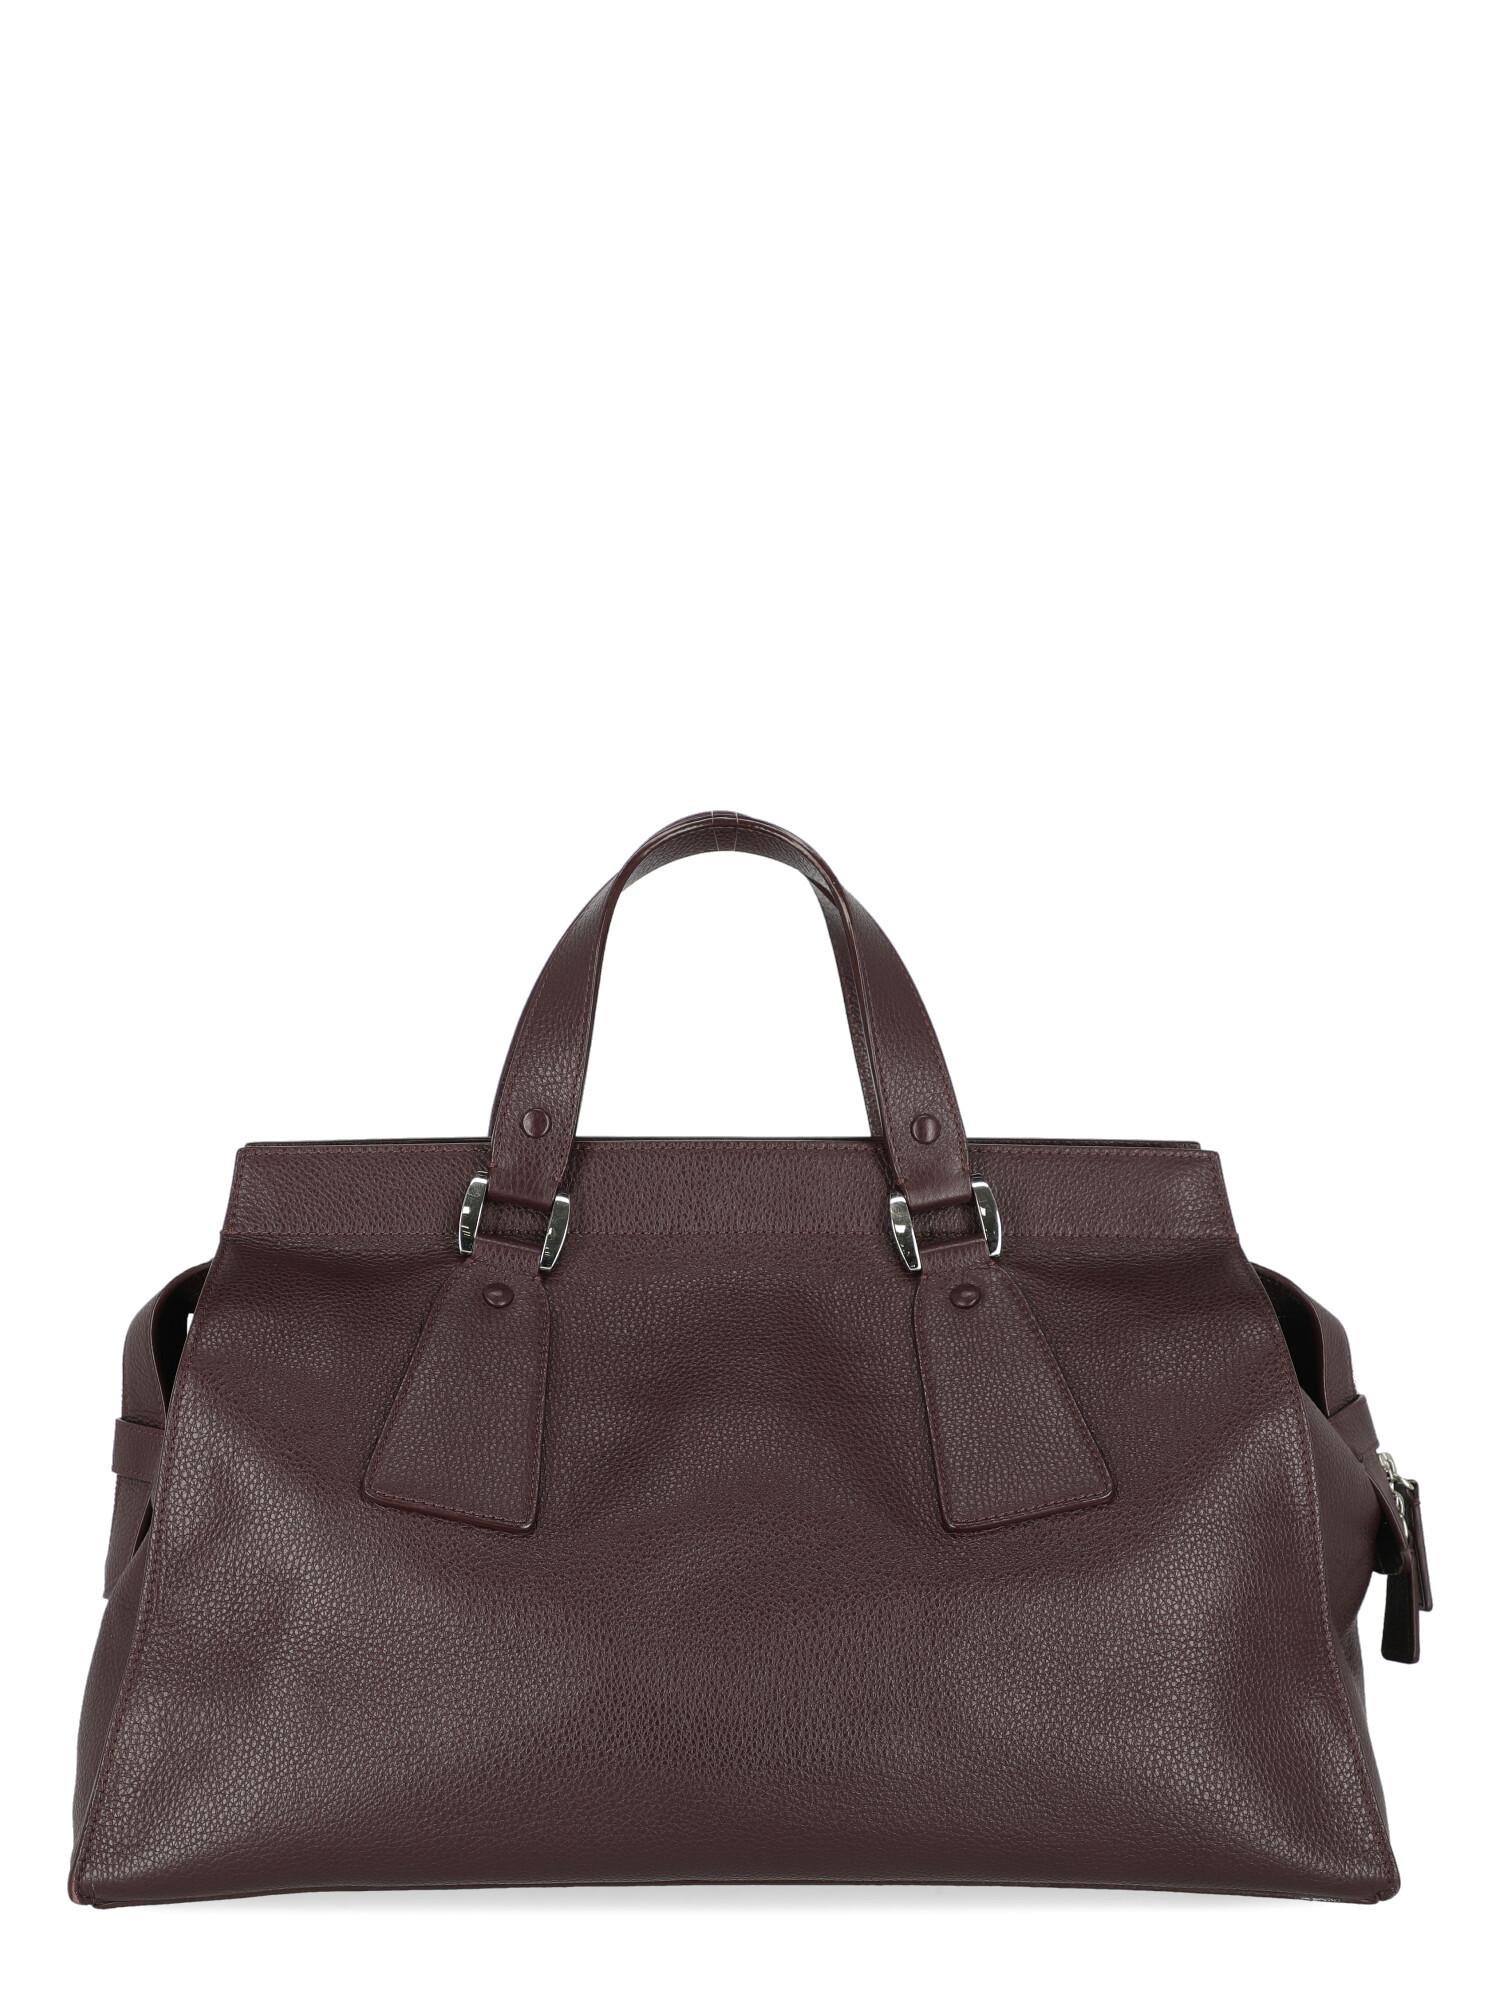 Giorgio Armani Women Handbags Purple Leather  In Good Condition For Sale In Milan, IT